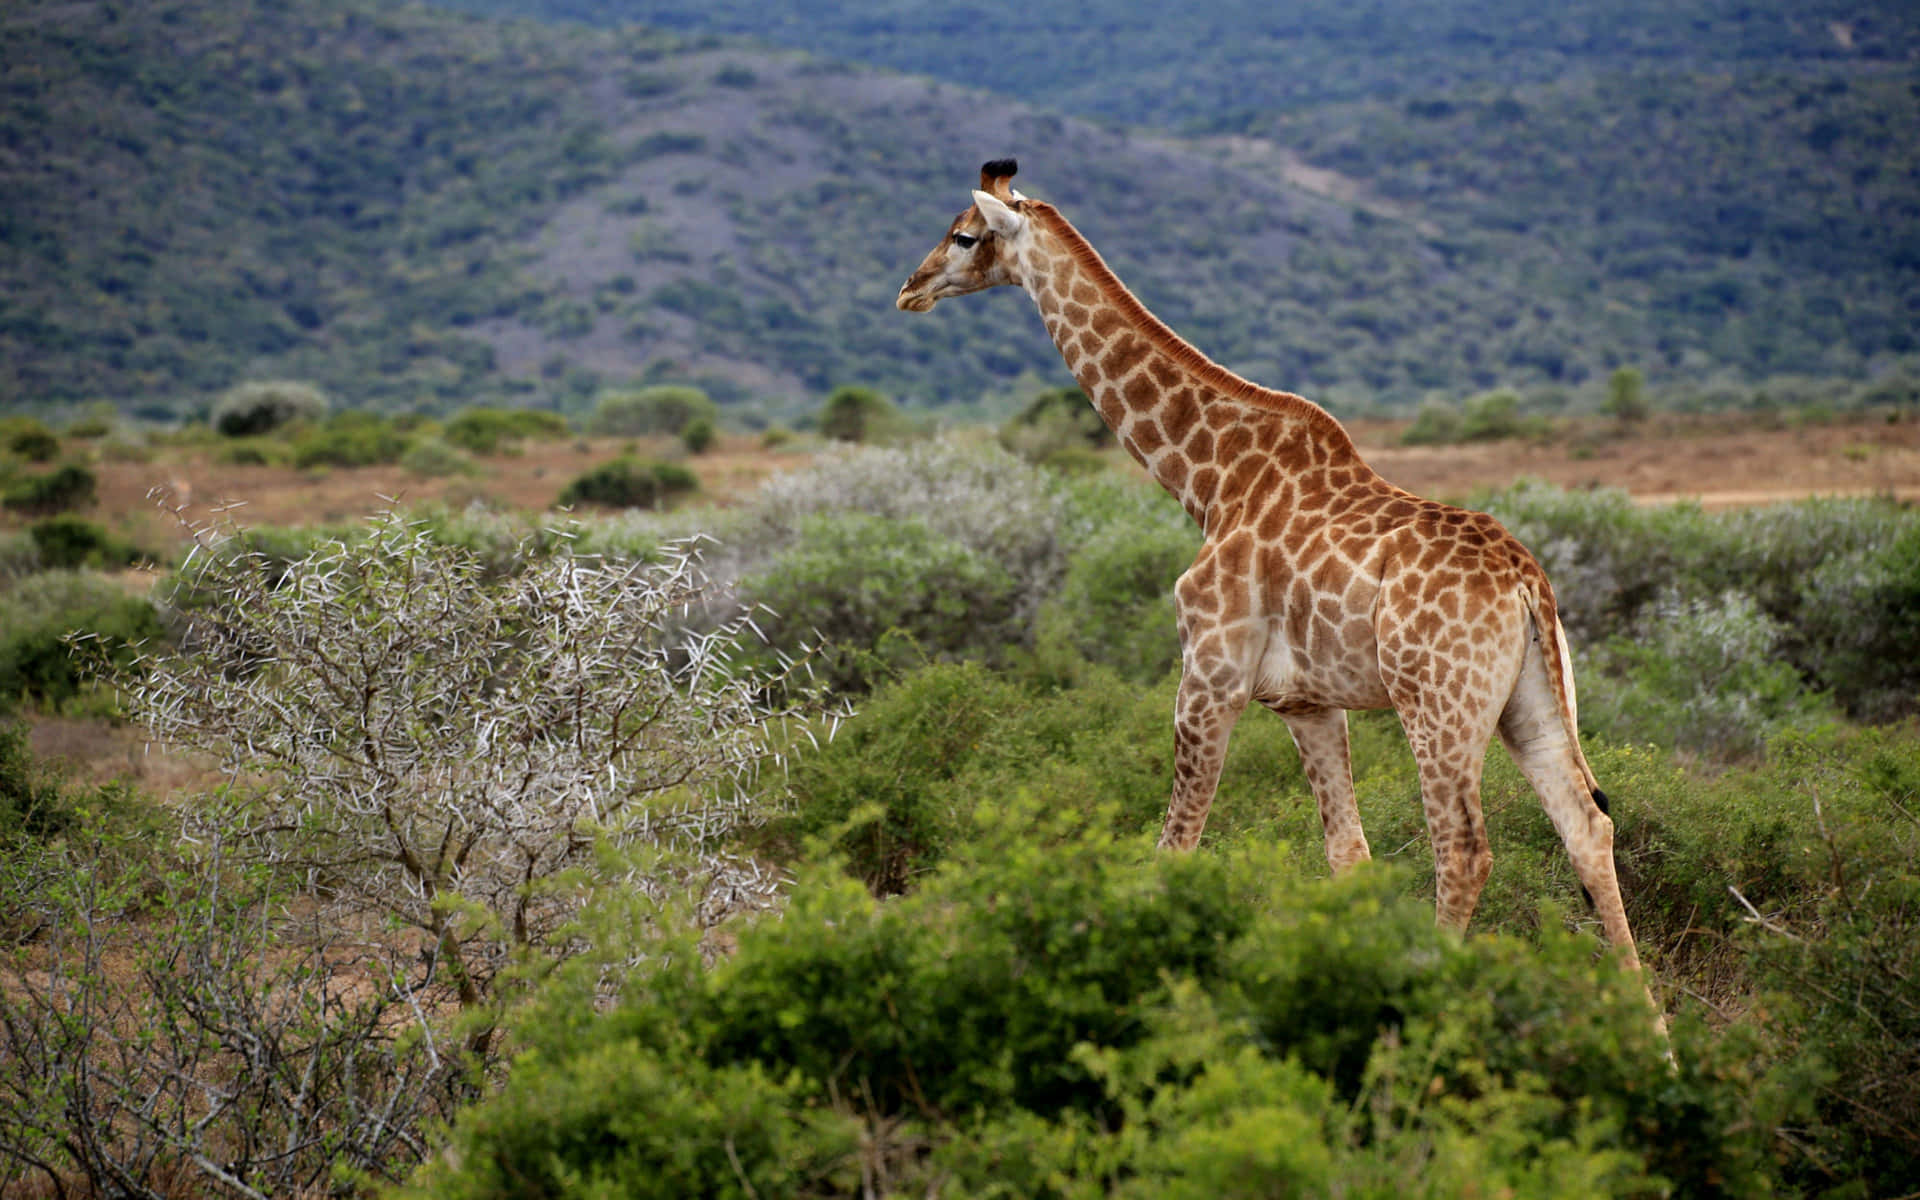 A Giraffe In The Wild